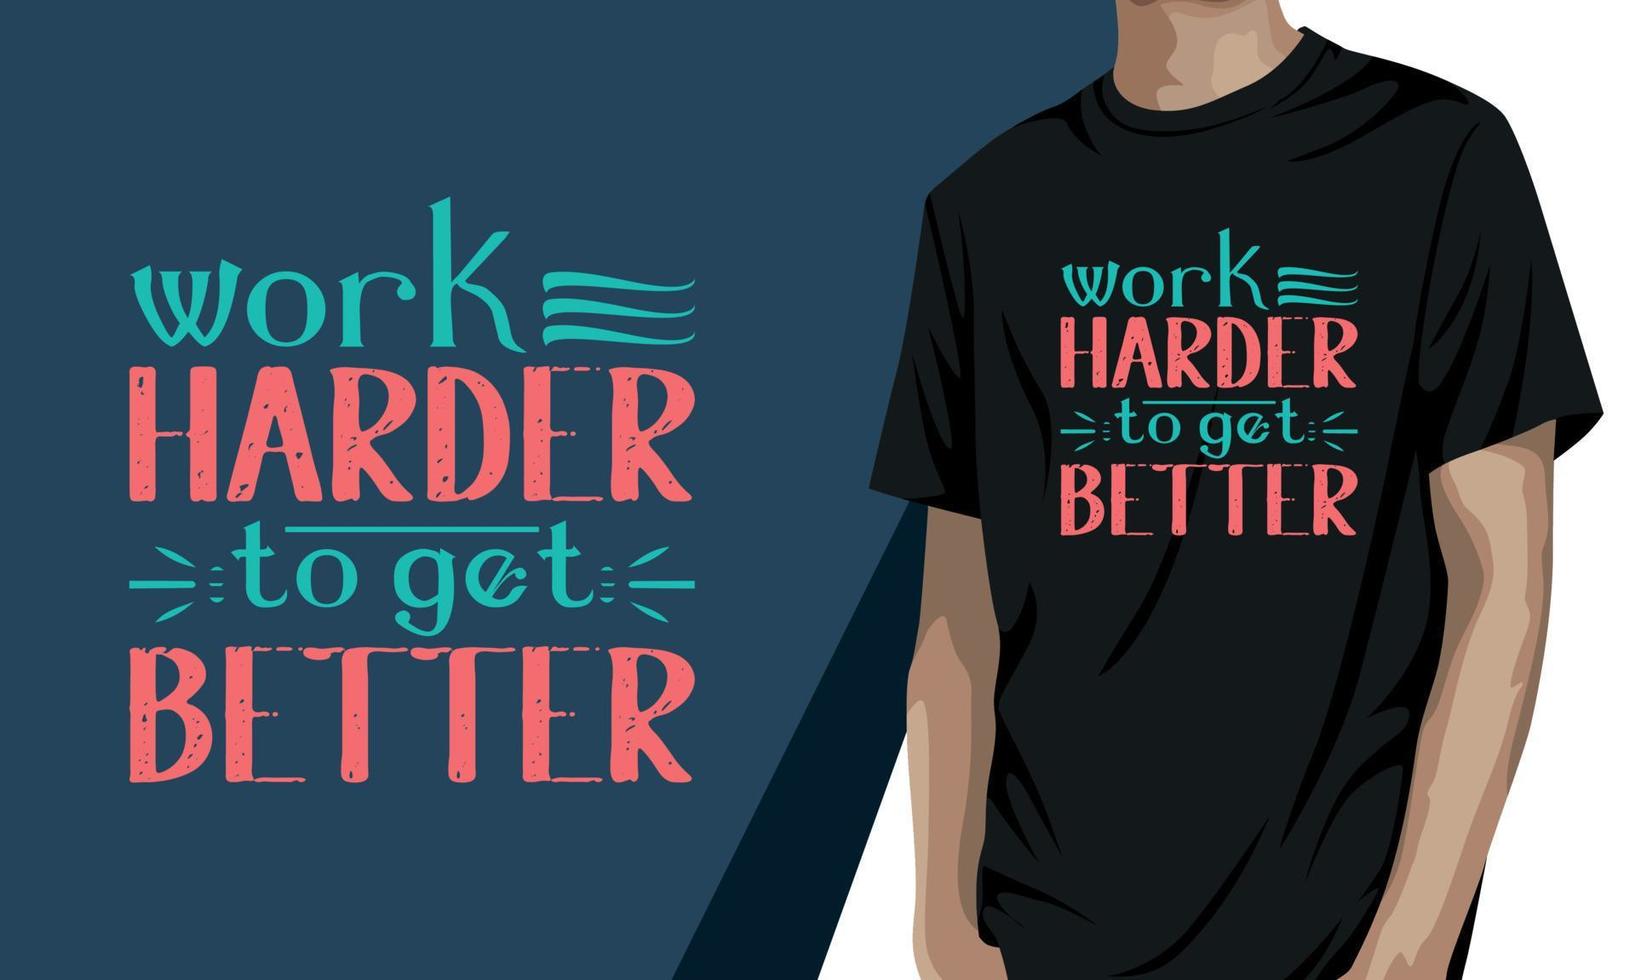 arbete hårdare till skaffa sig bättre, motiverande t-shirt design vektor